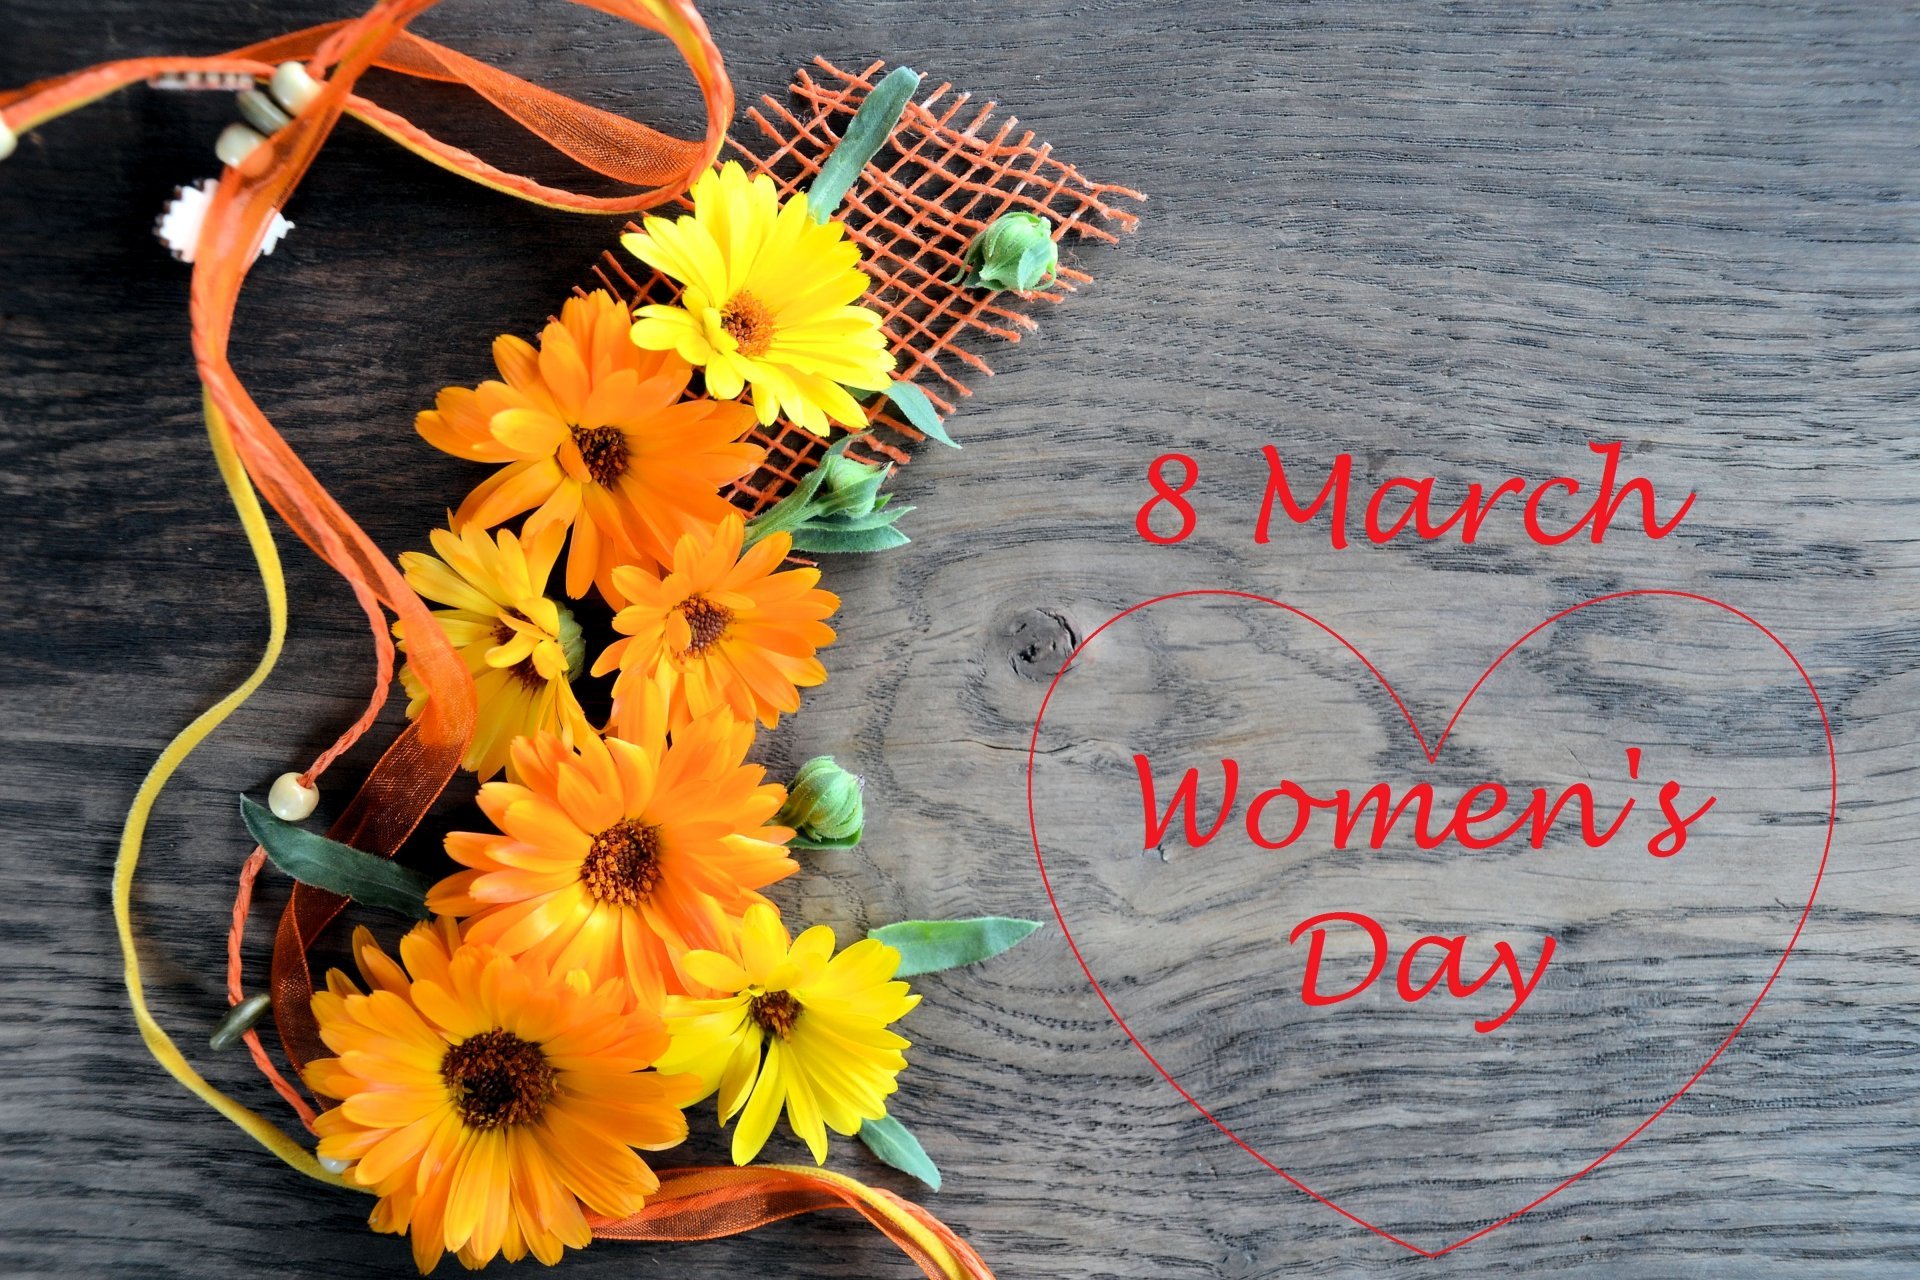 March 8 Women's Day Flower Gerbera Heart Greeting - 8 Марта Герберы , HD Wallpaper & Backgrounds